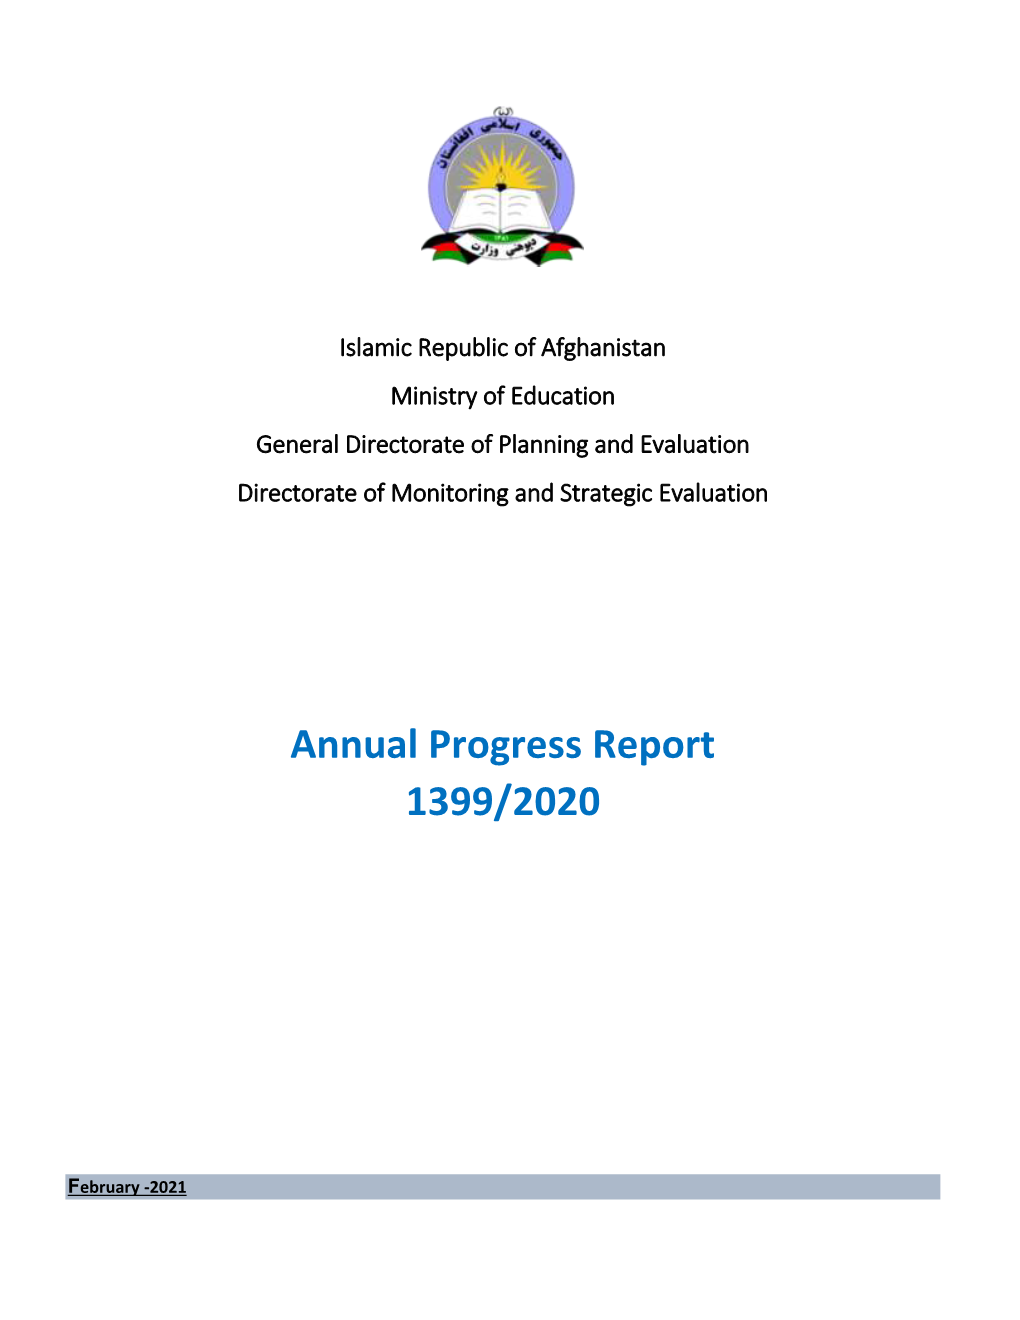 Annual Progress Report 1399/2020